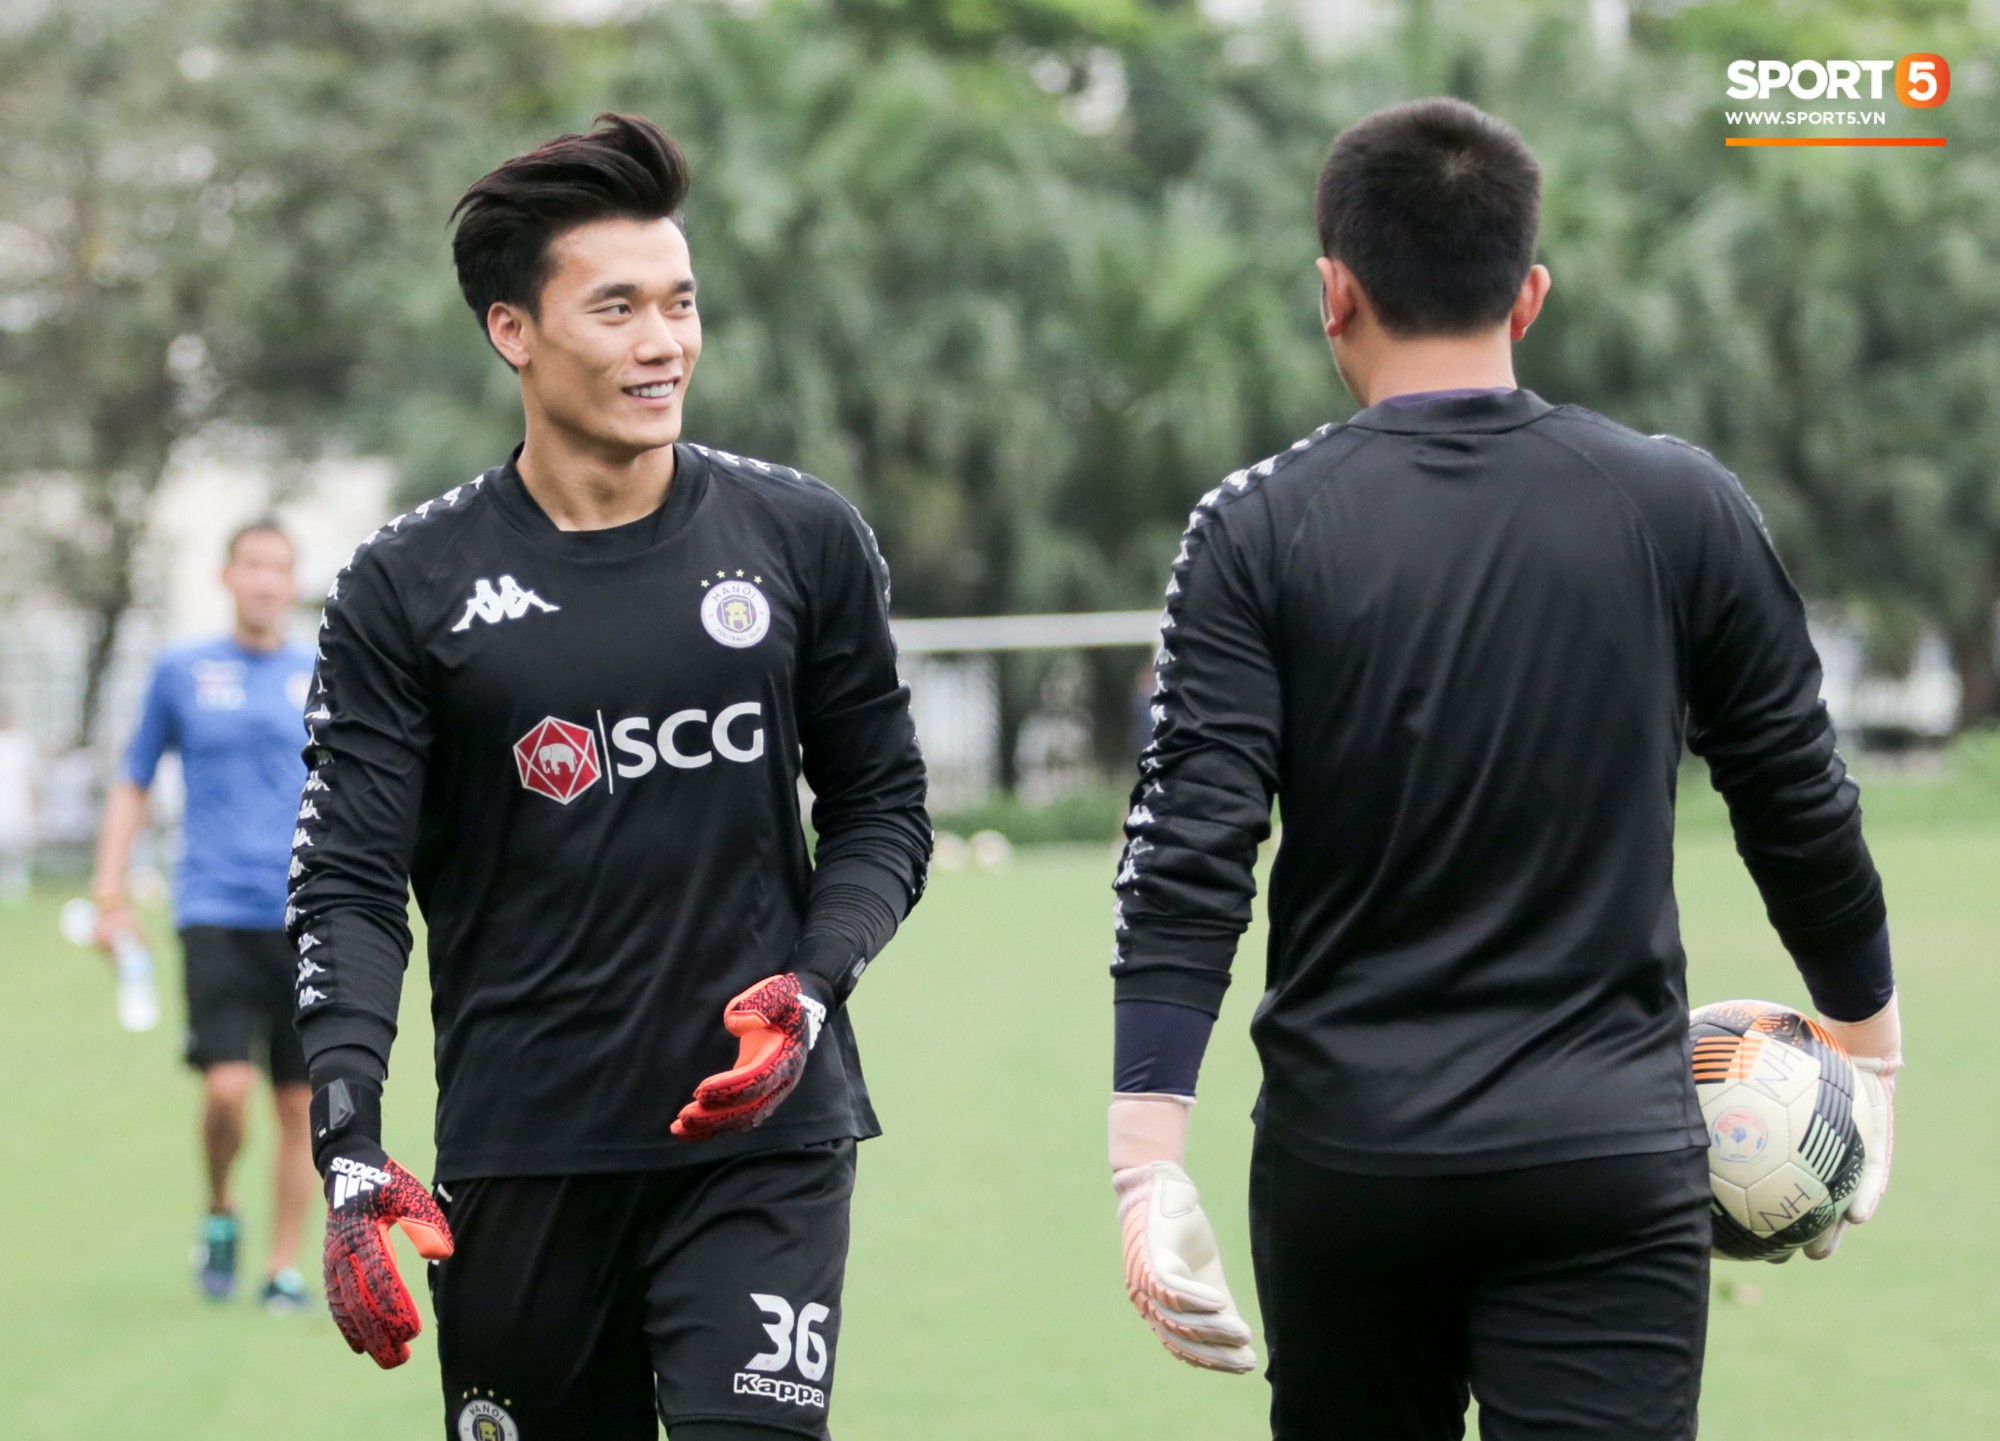 Quang Hải bấm bóng, ghi bàn đẳng cấp vào lưới Tiến Dũng trong buổi tập của Hà Nội FC - Ảnh 2.